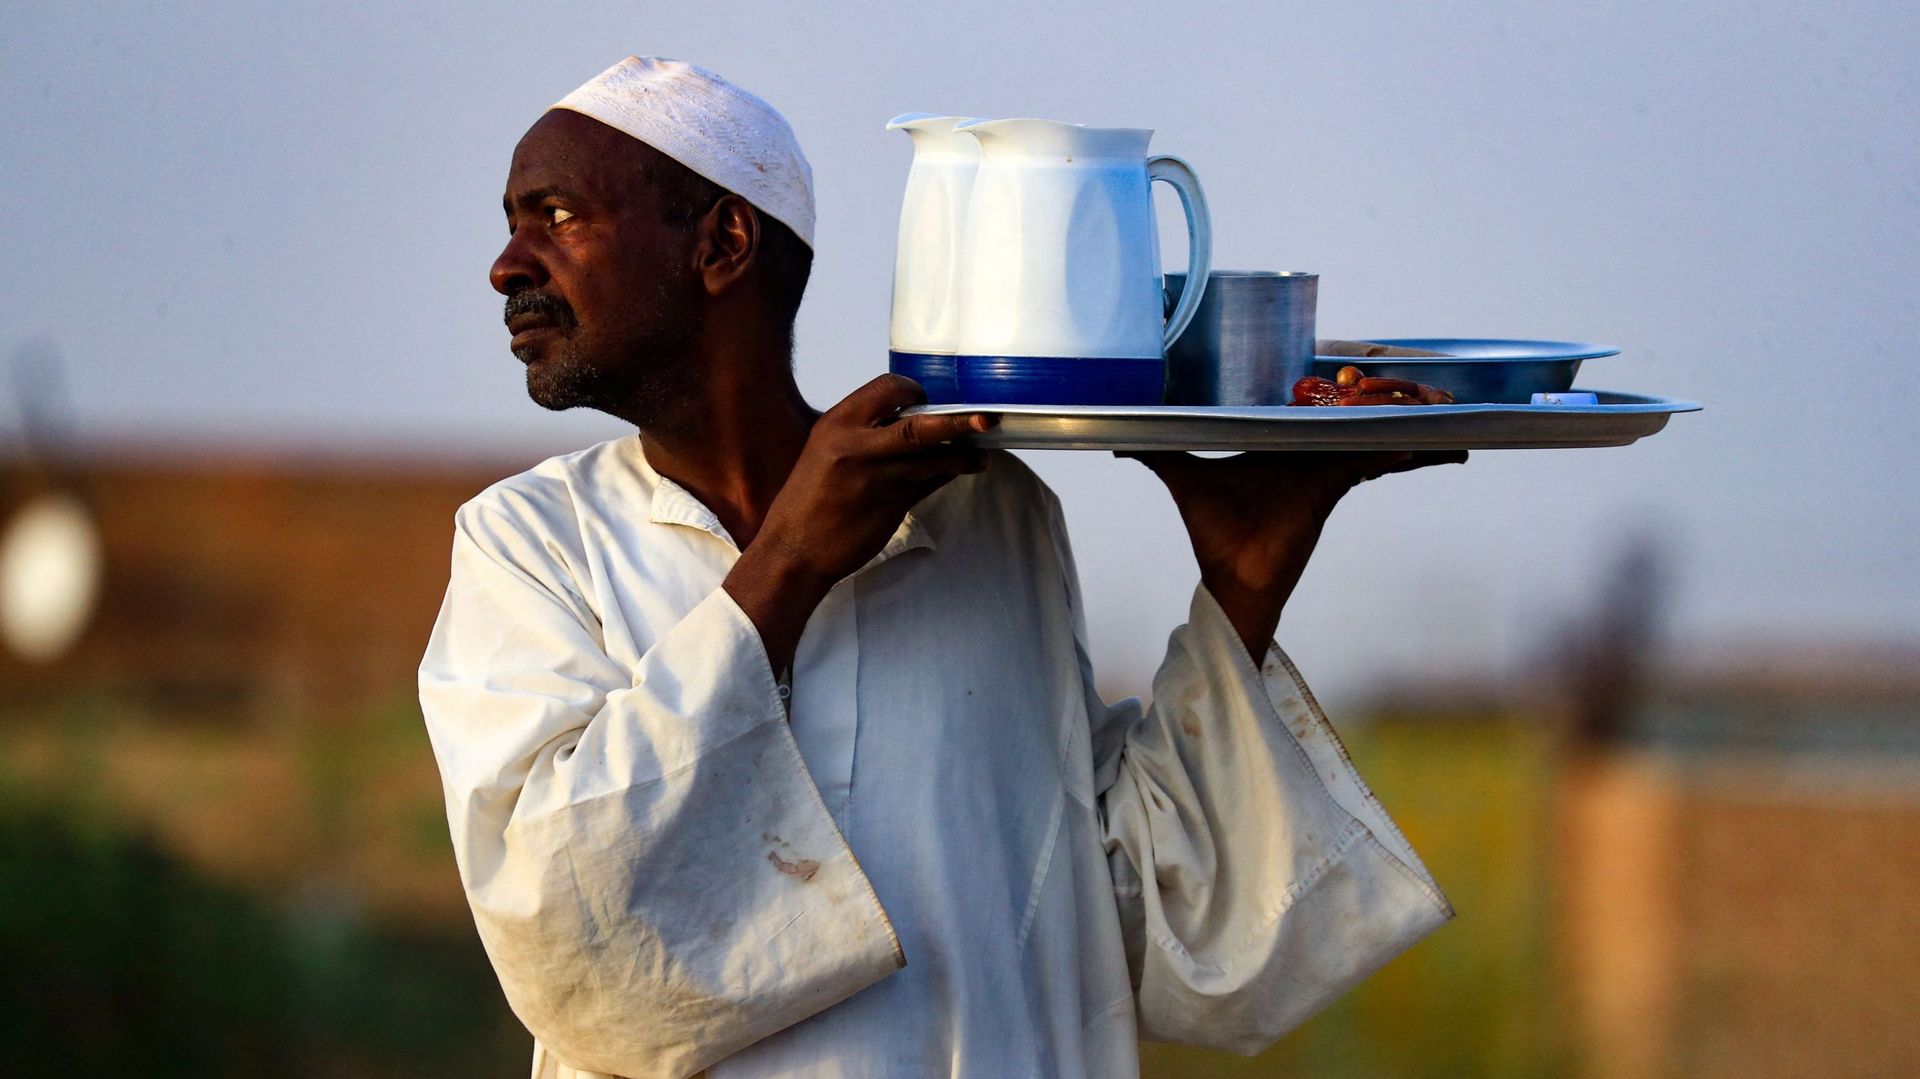 Un homme sert de la nourriture et des boissons lors d’un repas collectif Iftar devant une mosquée le long de la route nationale Jazeera dans le village d’al-Nuba, à environ 50 kilomètres au sud de la capitale du Soudan, le 8 avril 2022, pendant le mois sa